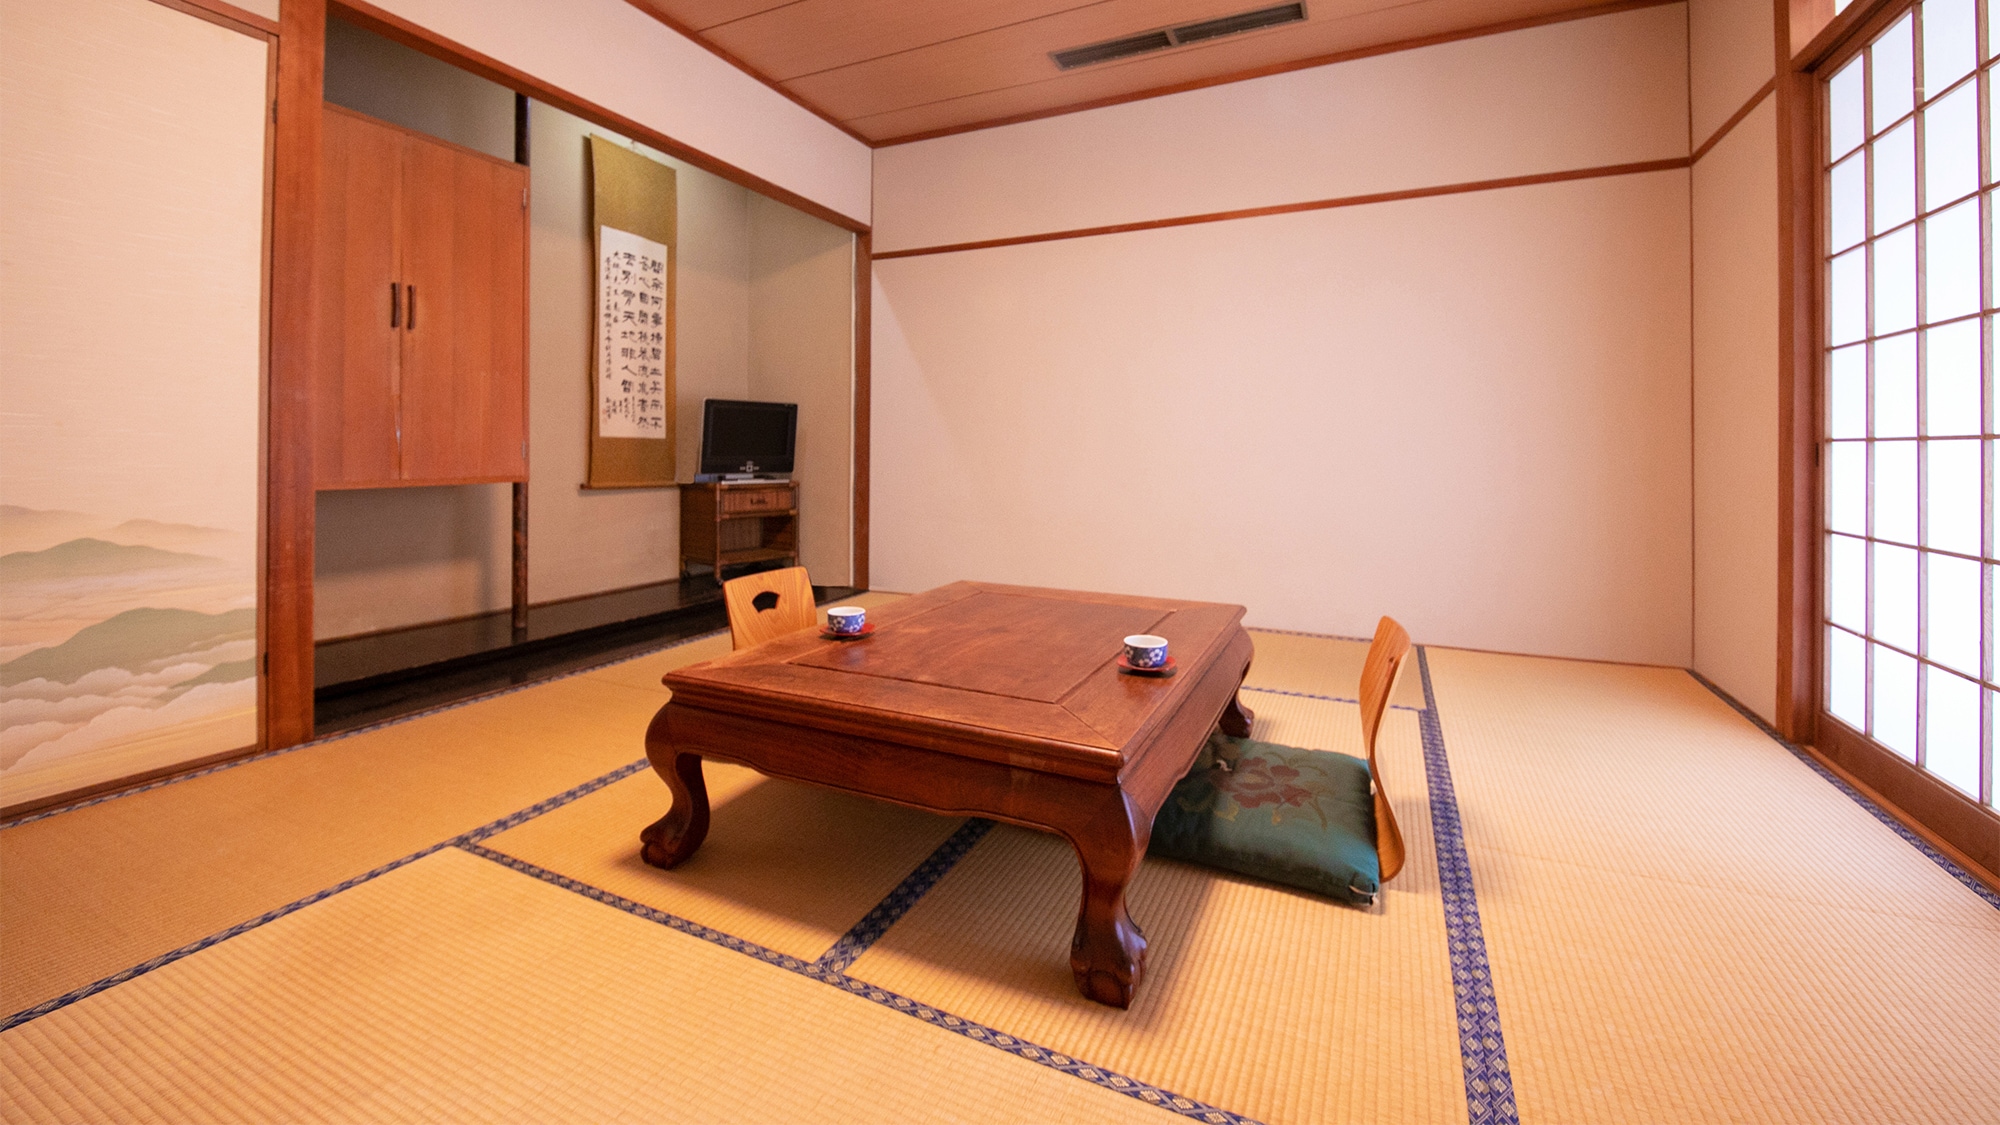 ■ ห้องสไตล์ญี่ปุ่น 8 เสื่อทาทามิ พร้อมอ่างอาบน้ำและห้องส้วม ■